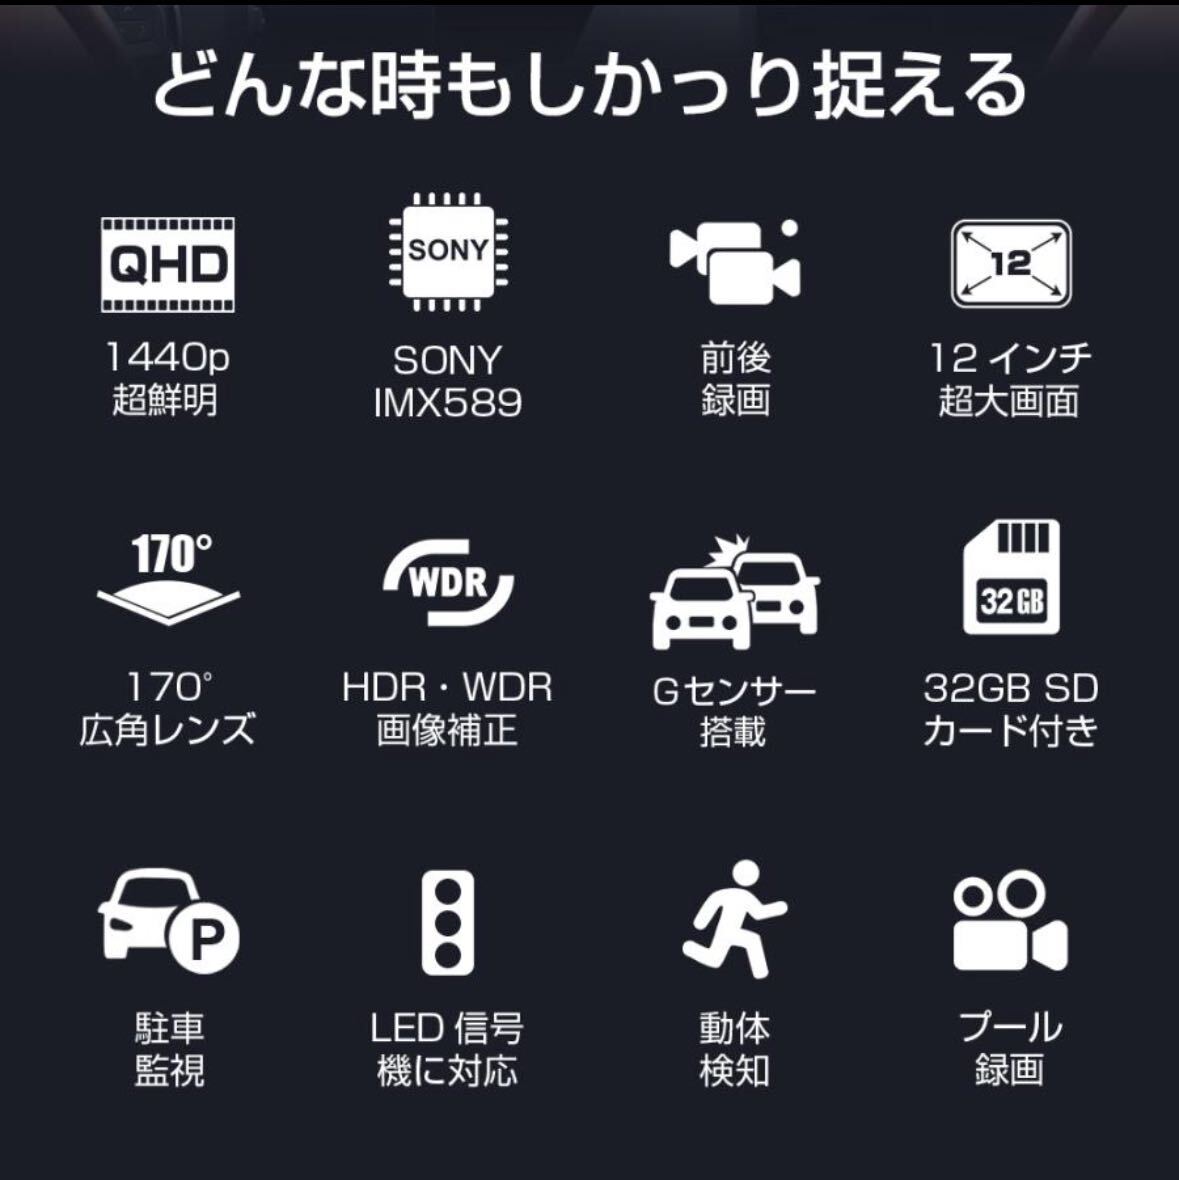 [ бесплатная доставка ]1 иен ~ регистратор пути (drive recorder) do RaRe ko